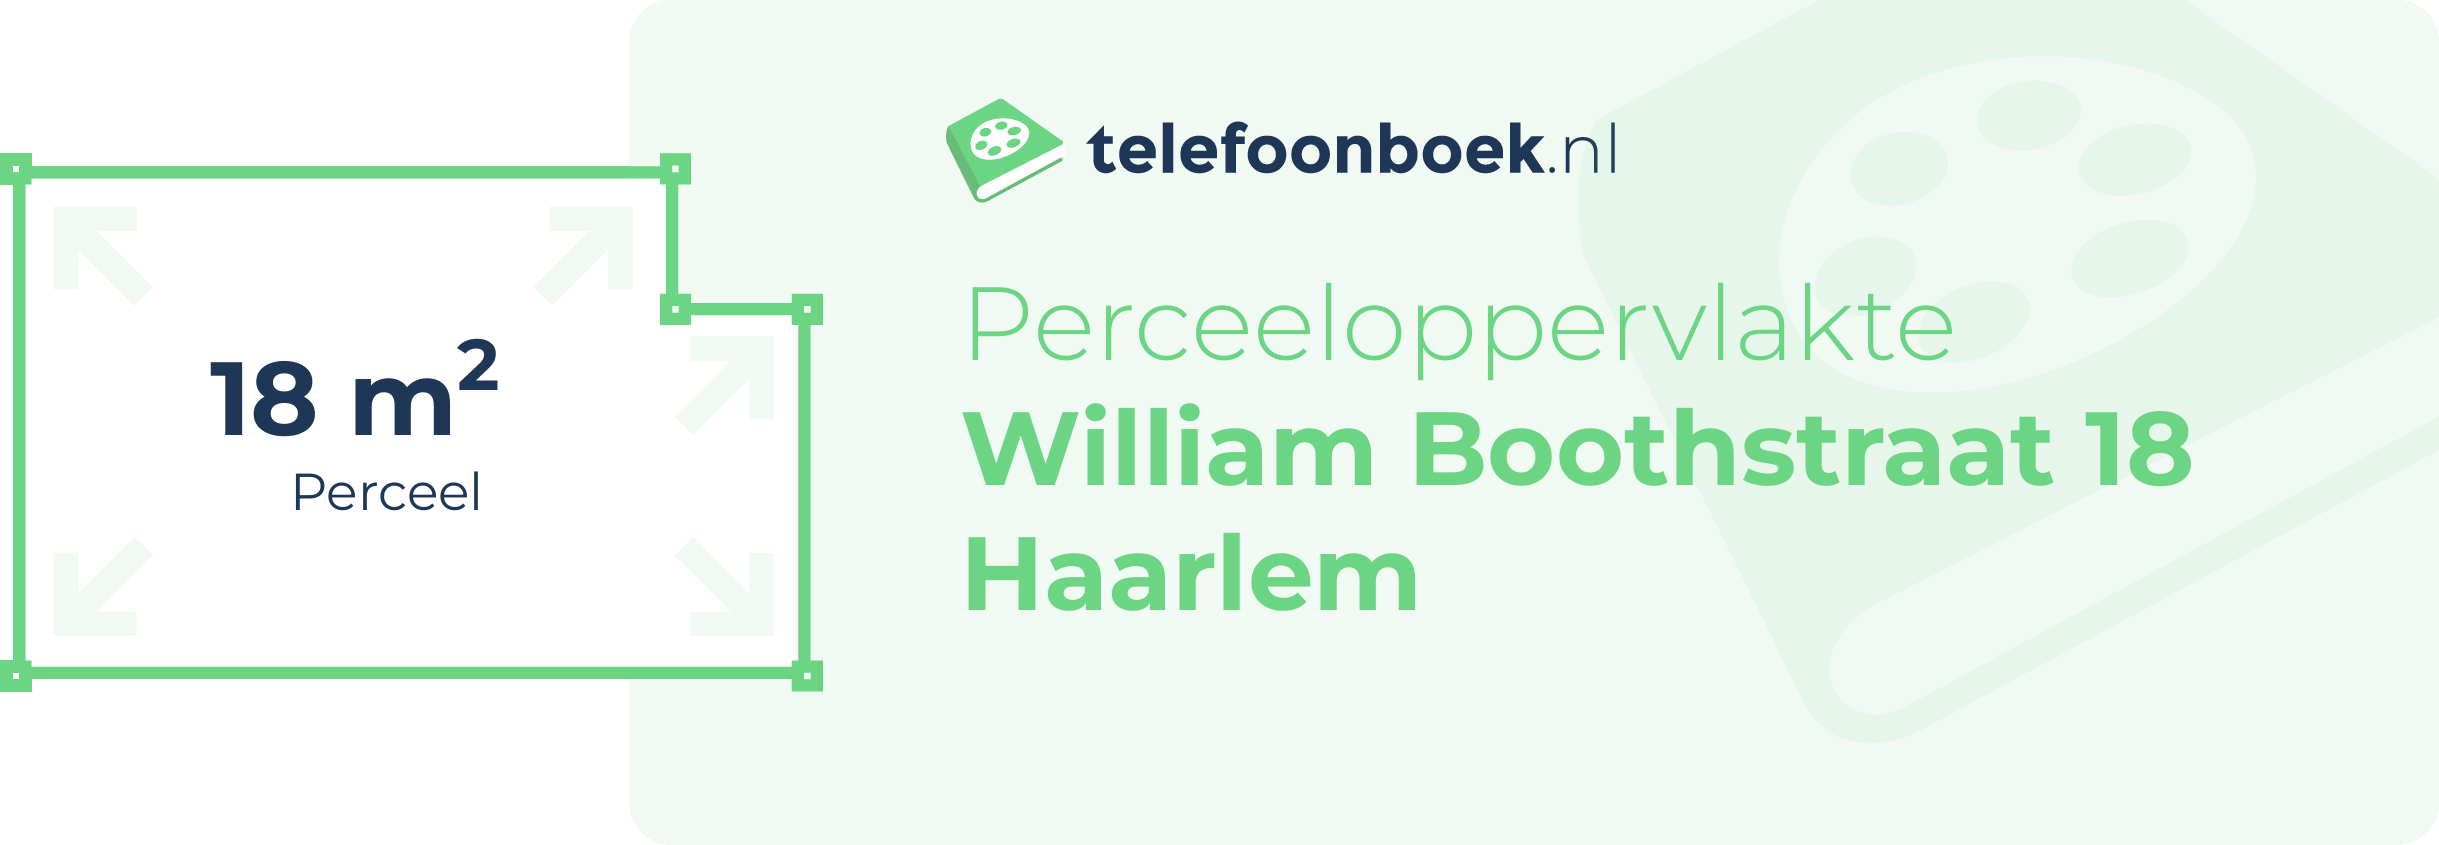 Perceeloppervlakte William Boothstraat 18 Haarlem